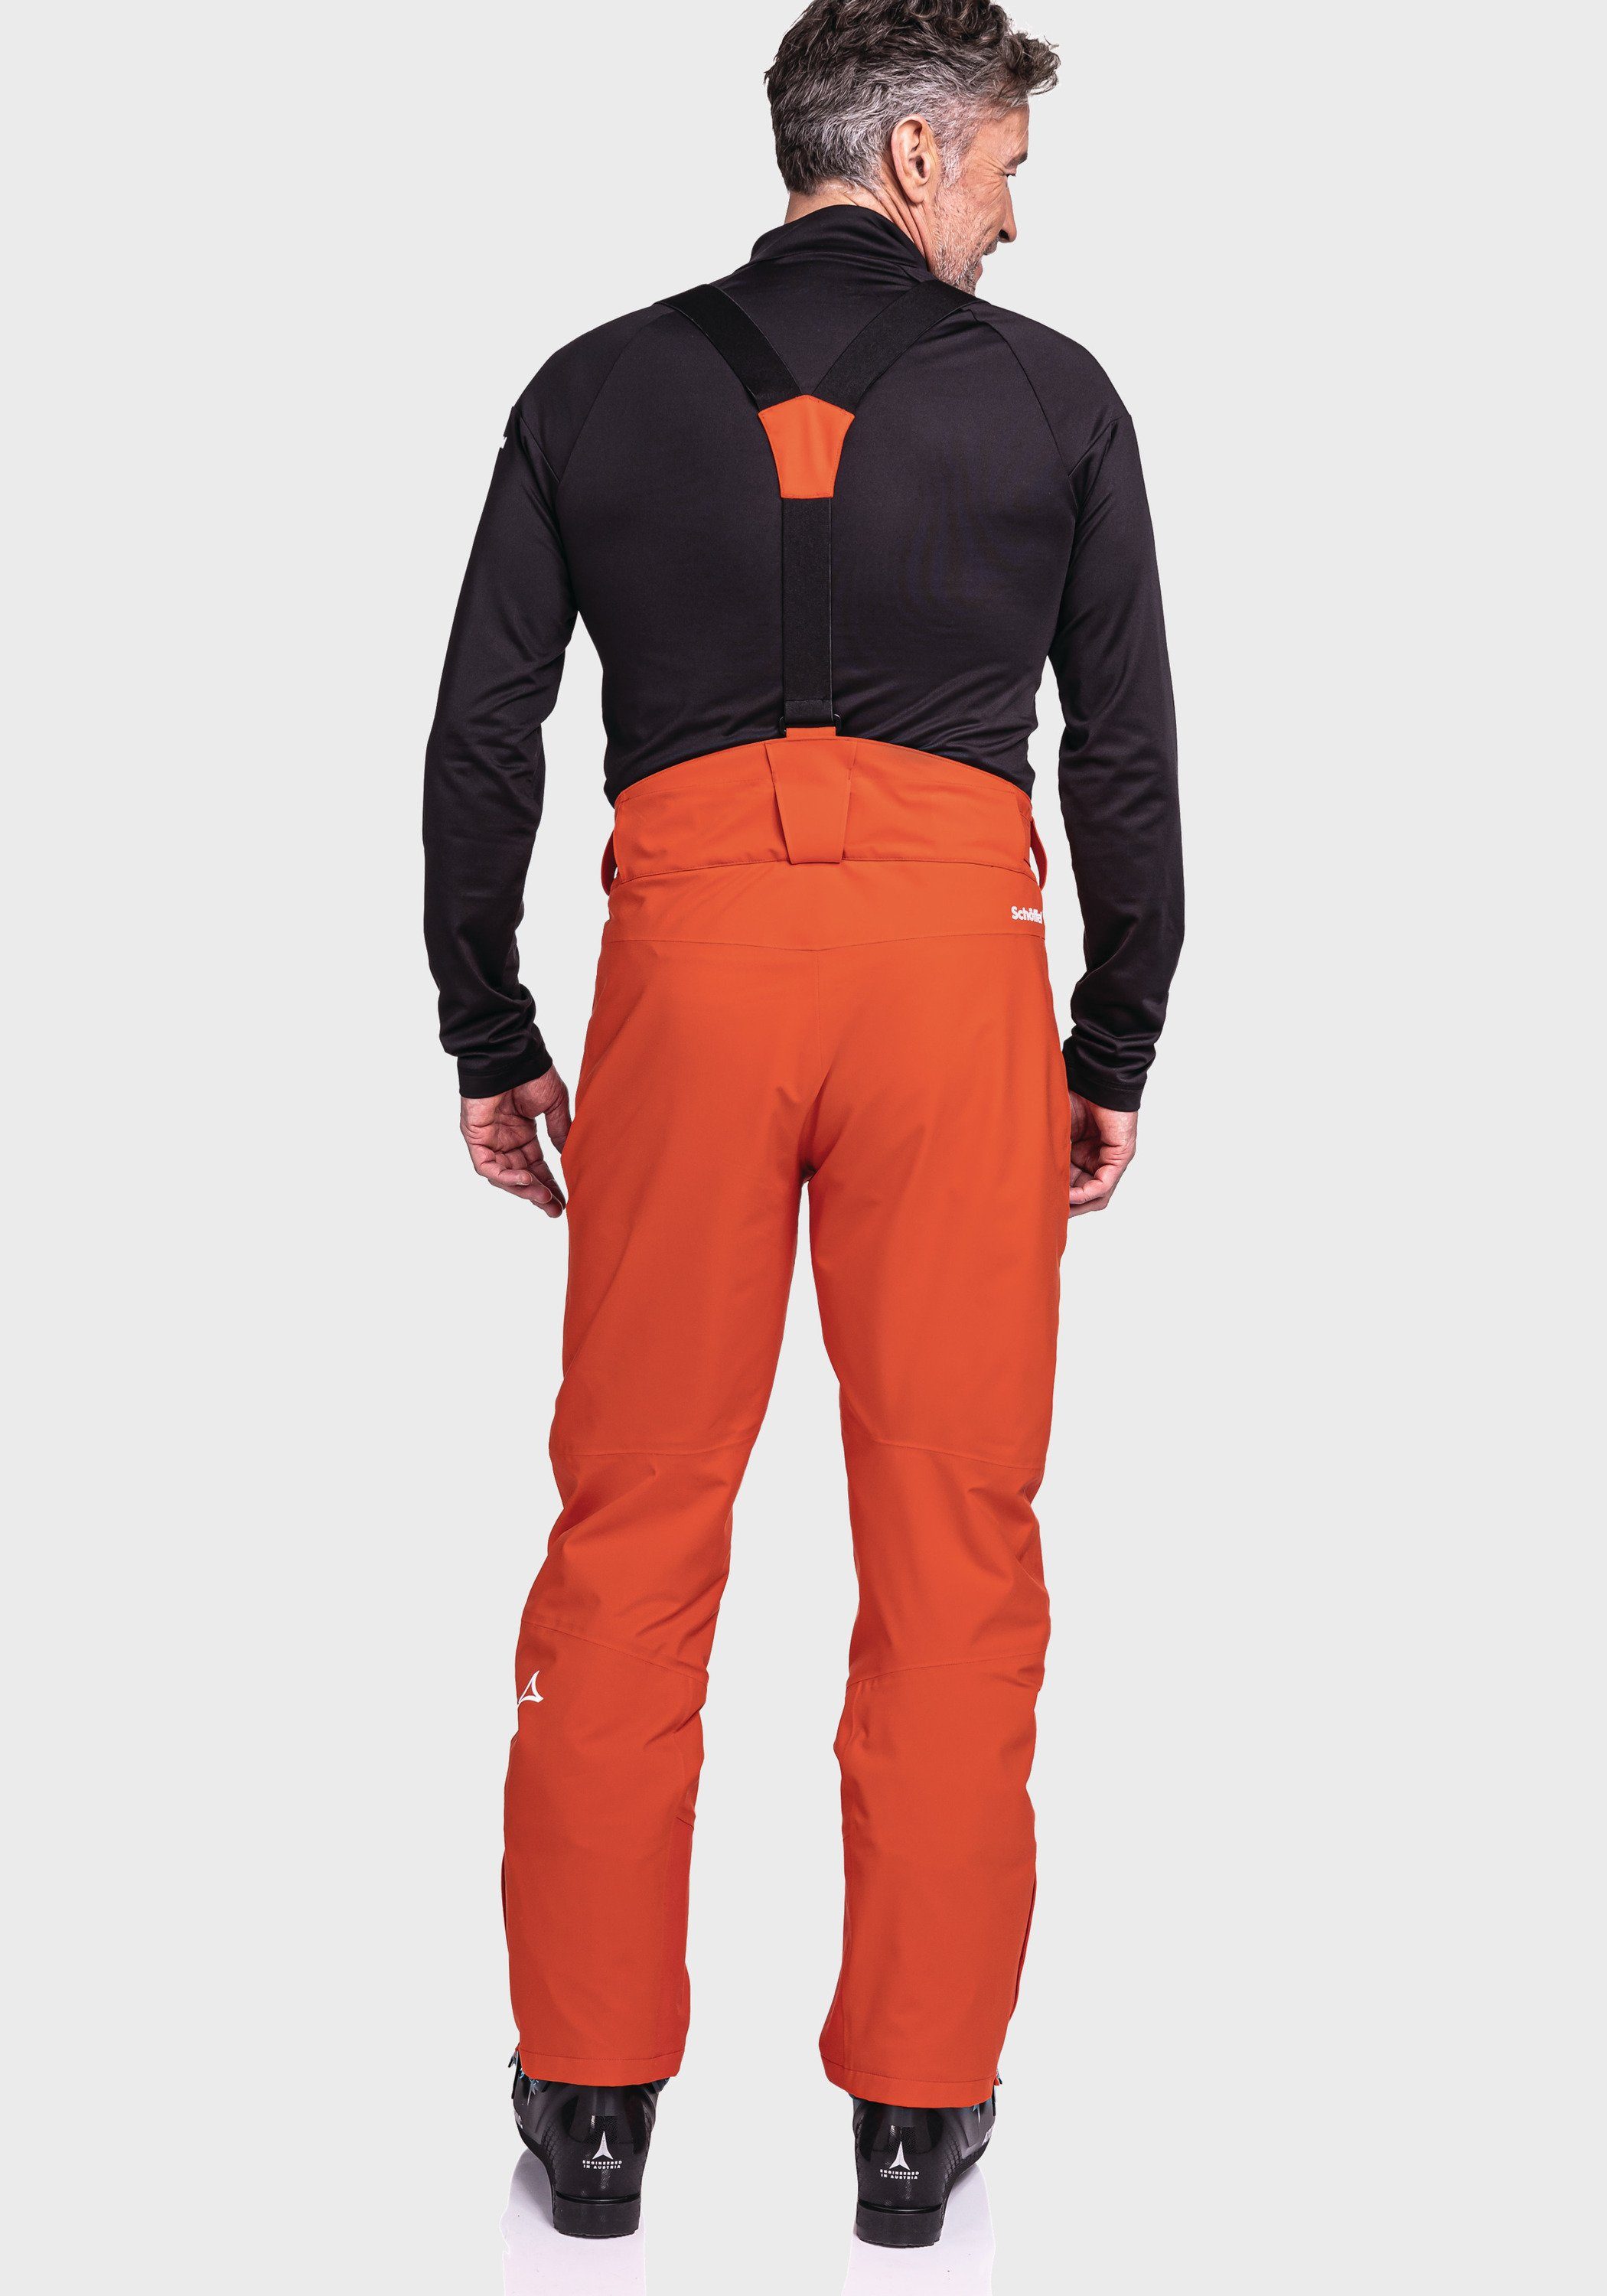 Schöffel M orange Latzhose Ski Weissach Pants